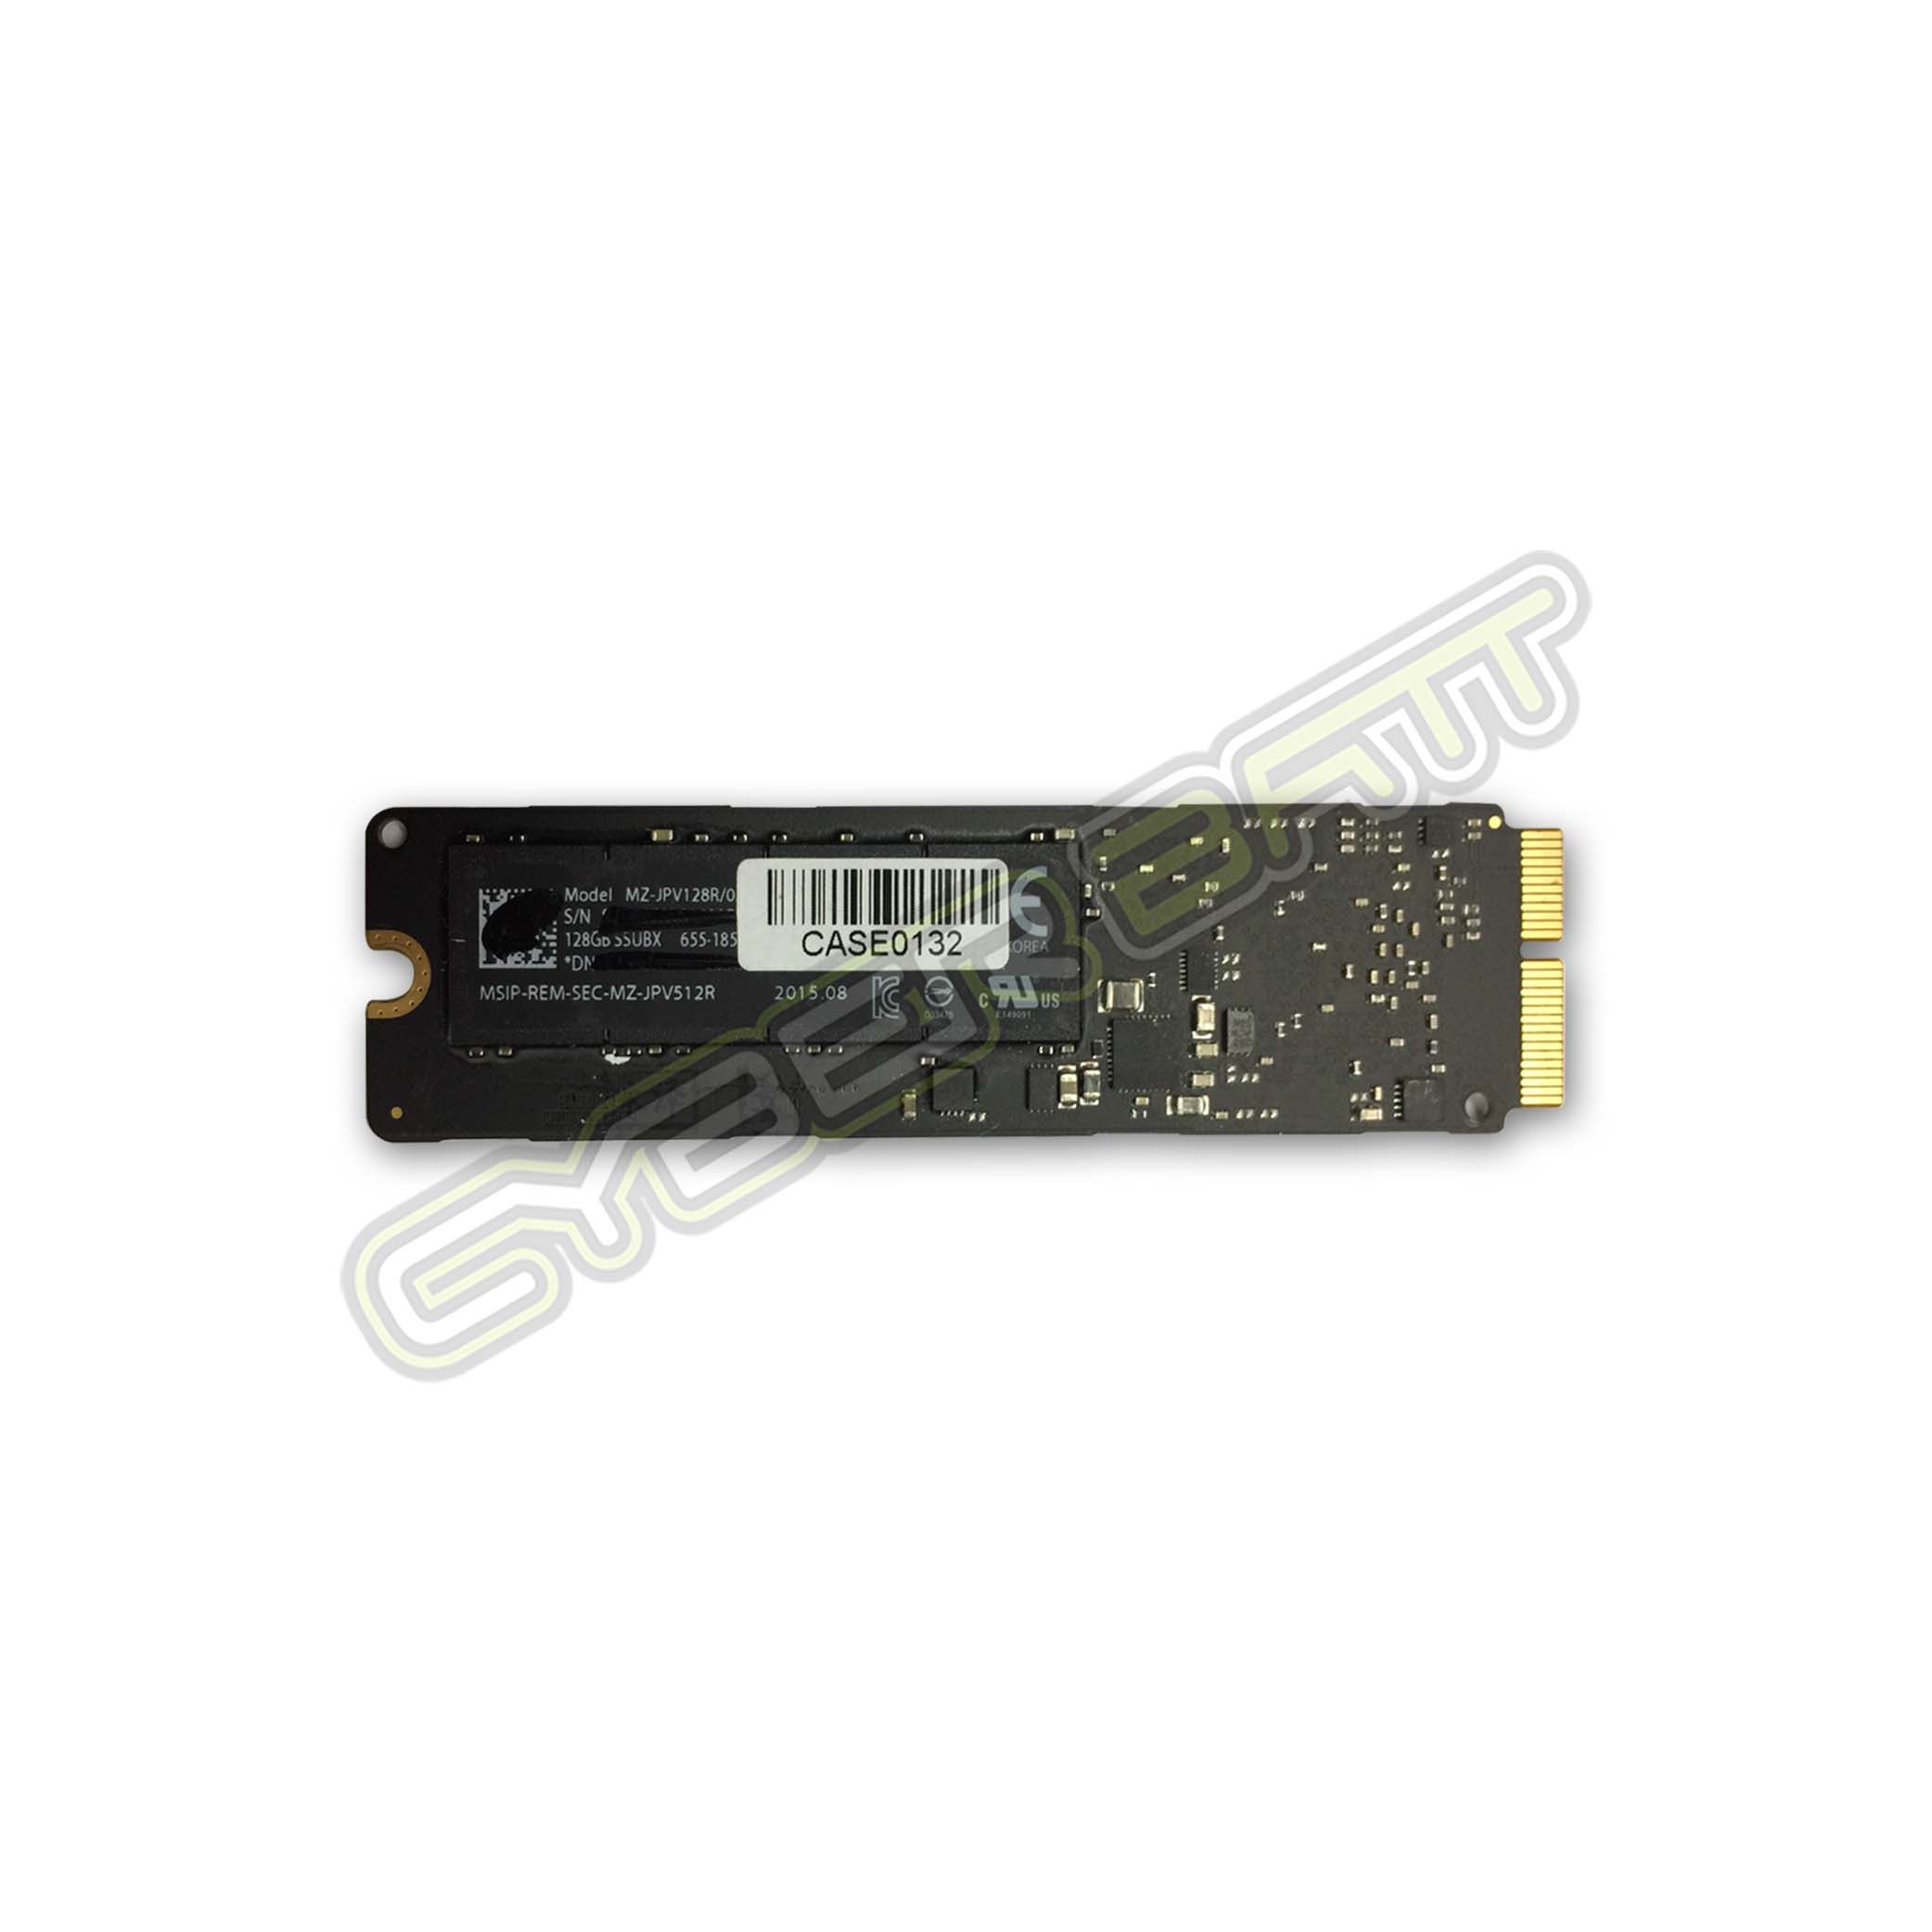 Flash Storage MacBook Air 11 inch / 13 inch 128 GB (Mid 2013-Early 2014 - 2015)